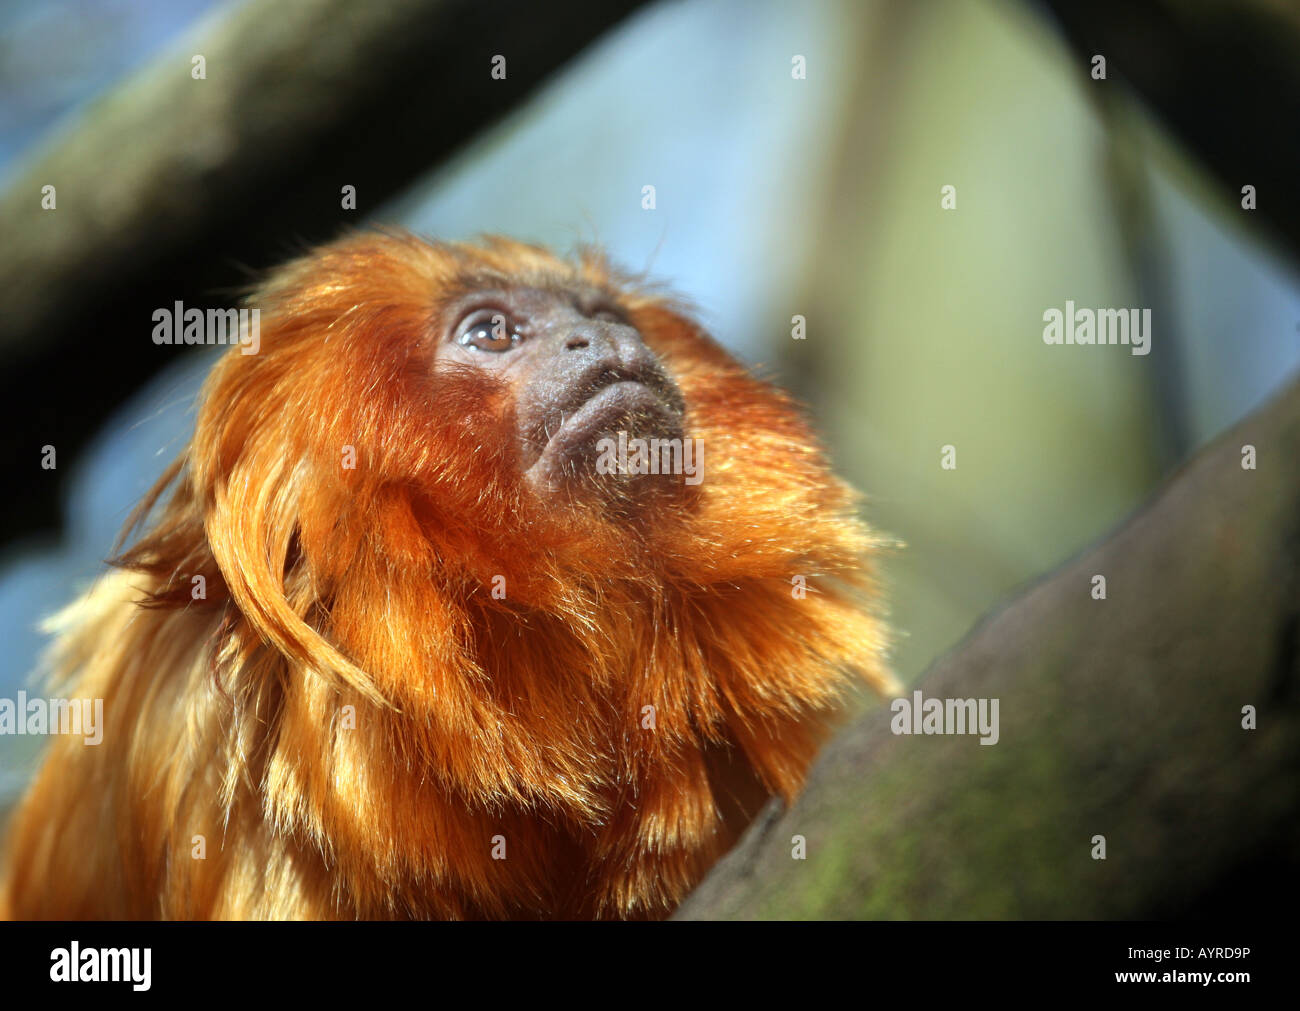 Golden Lion Tamarin (Leontopithecus rosalia) looking upwards Stock Photo